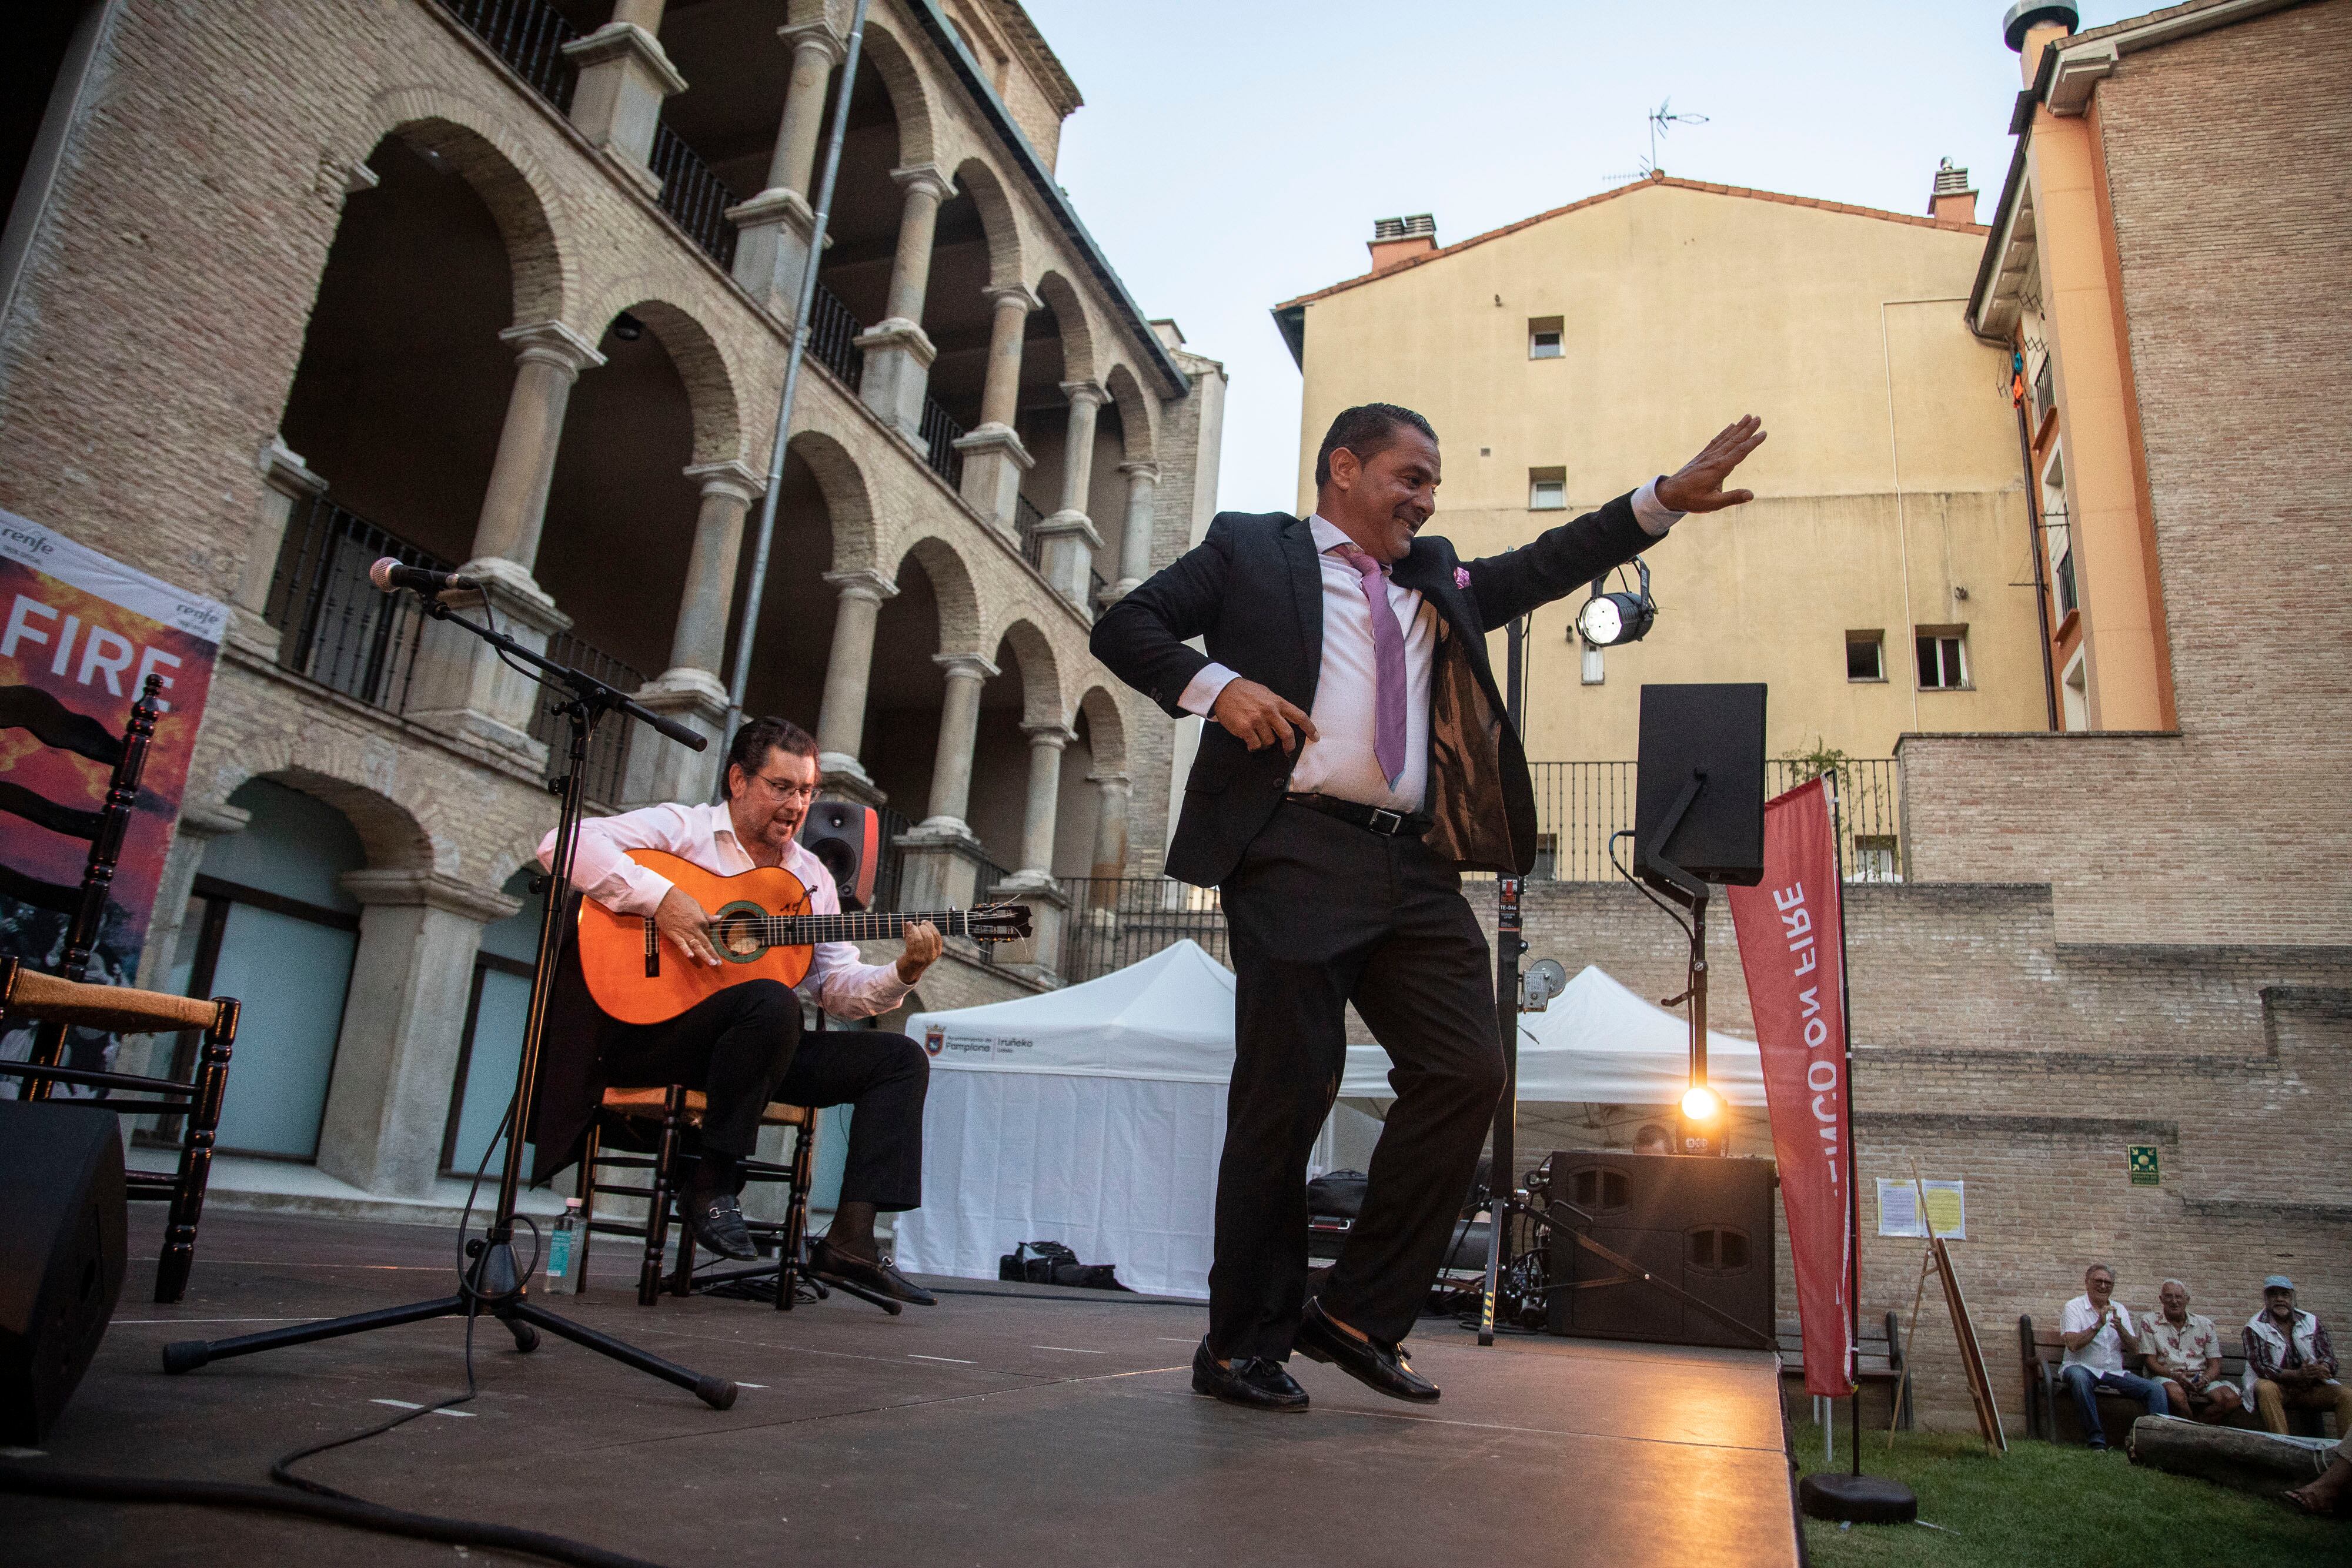 El cantaor José Carpio Mijita y el guitarrista Antonio Higuero, juntos durante su actuación en el Palacio de Ezpeleta de Pamplona durante el festival Flamenco on Fire.